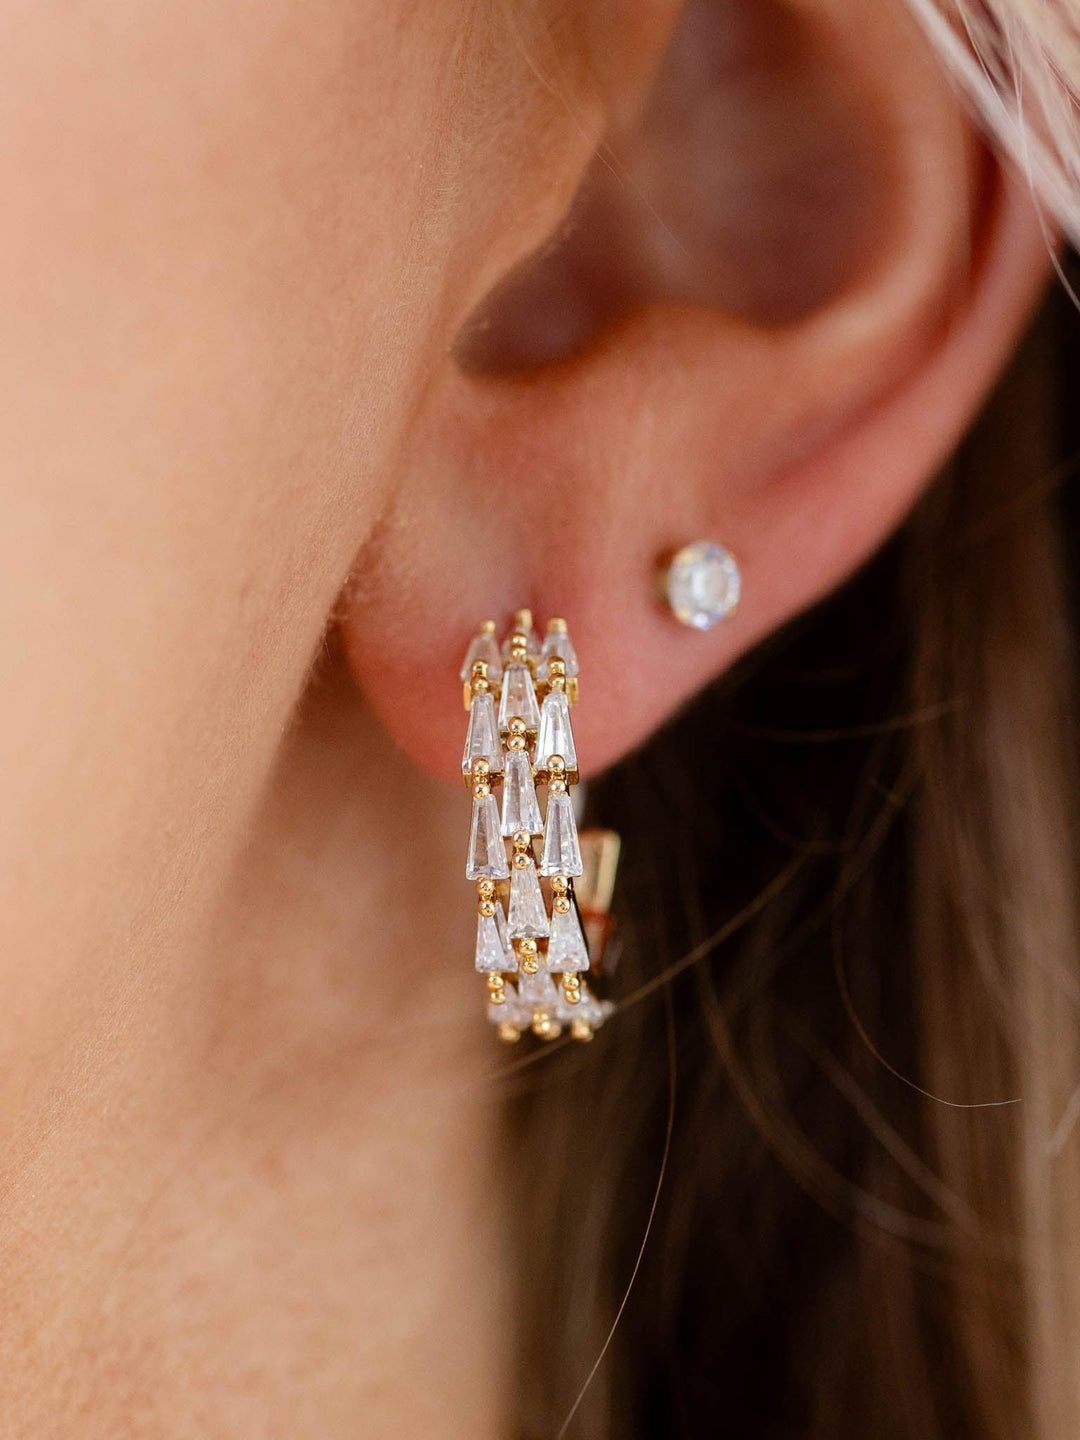 baguette earrings